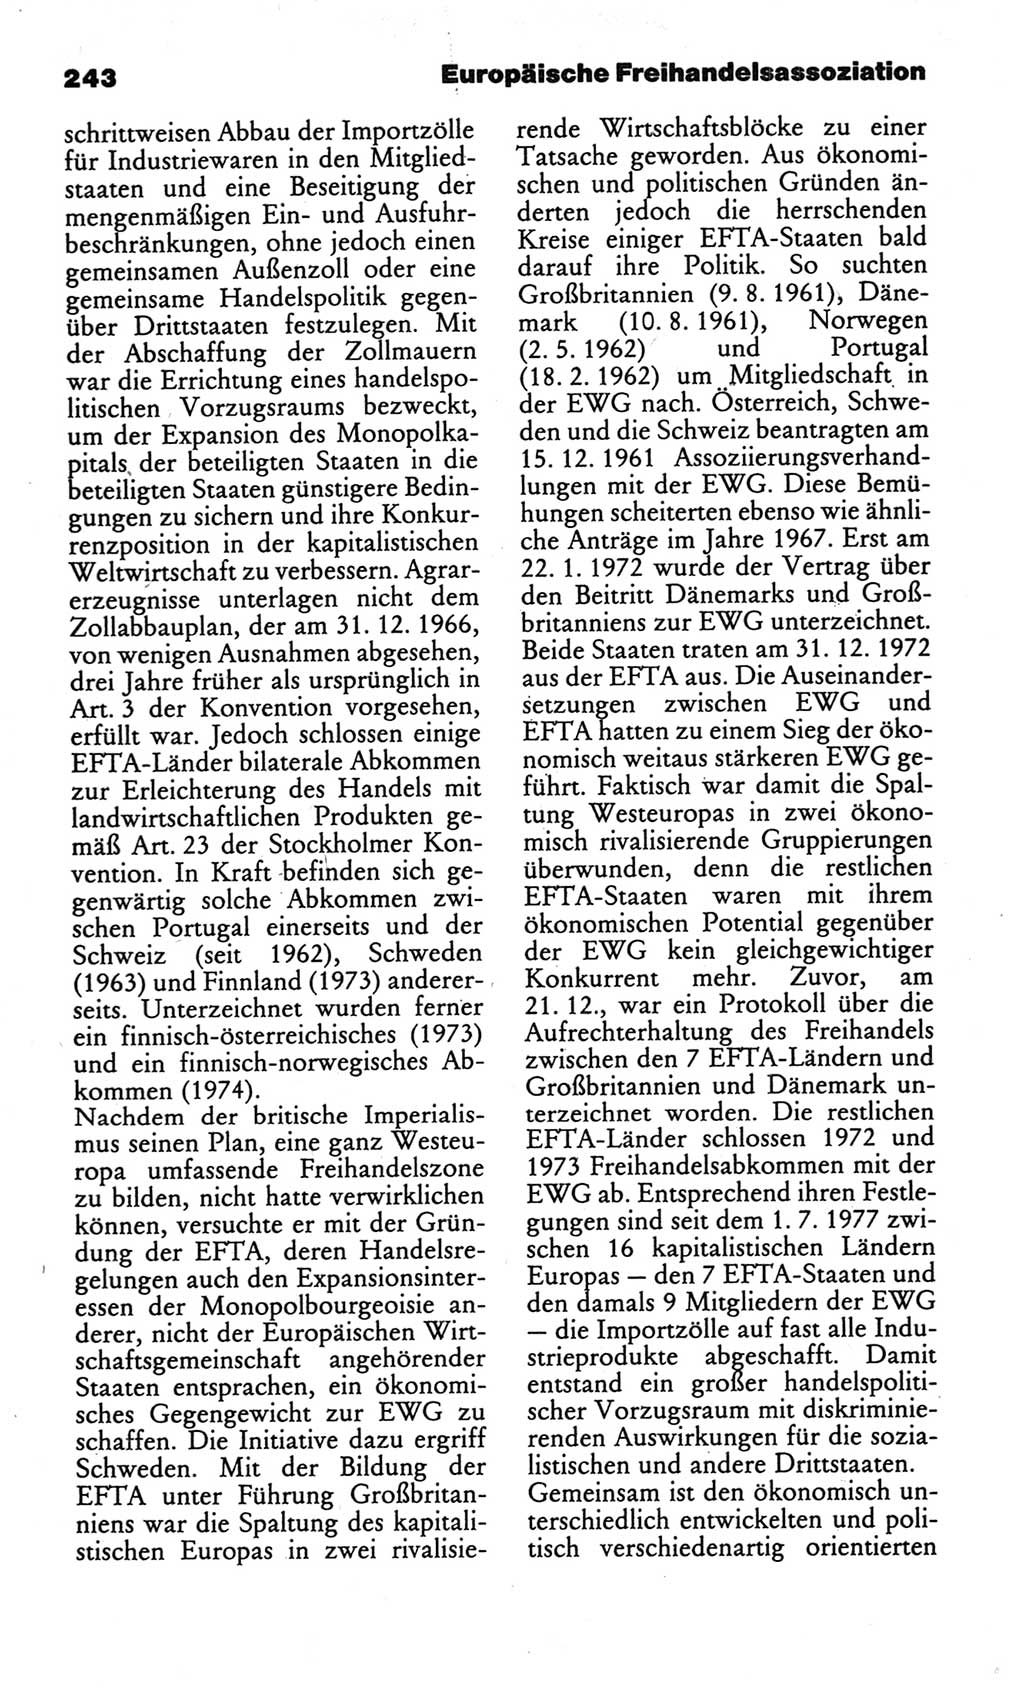 Kleines politisches Wörterbuch [Deutsche Demokratische Republik (DDR)] 1986, Seite 243 (Kl. pol. Wb. DDR 1986, S. 243)